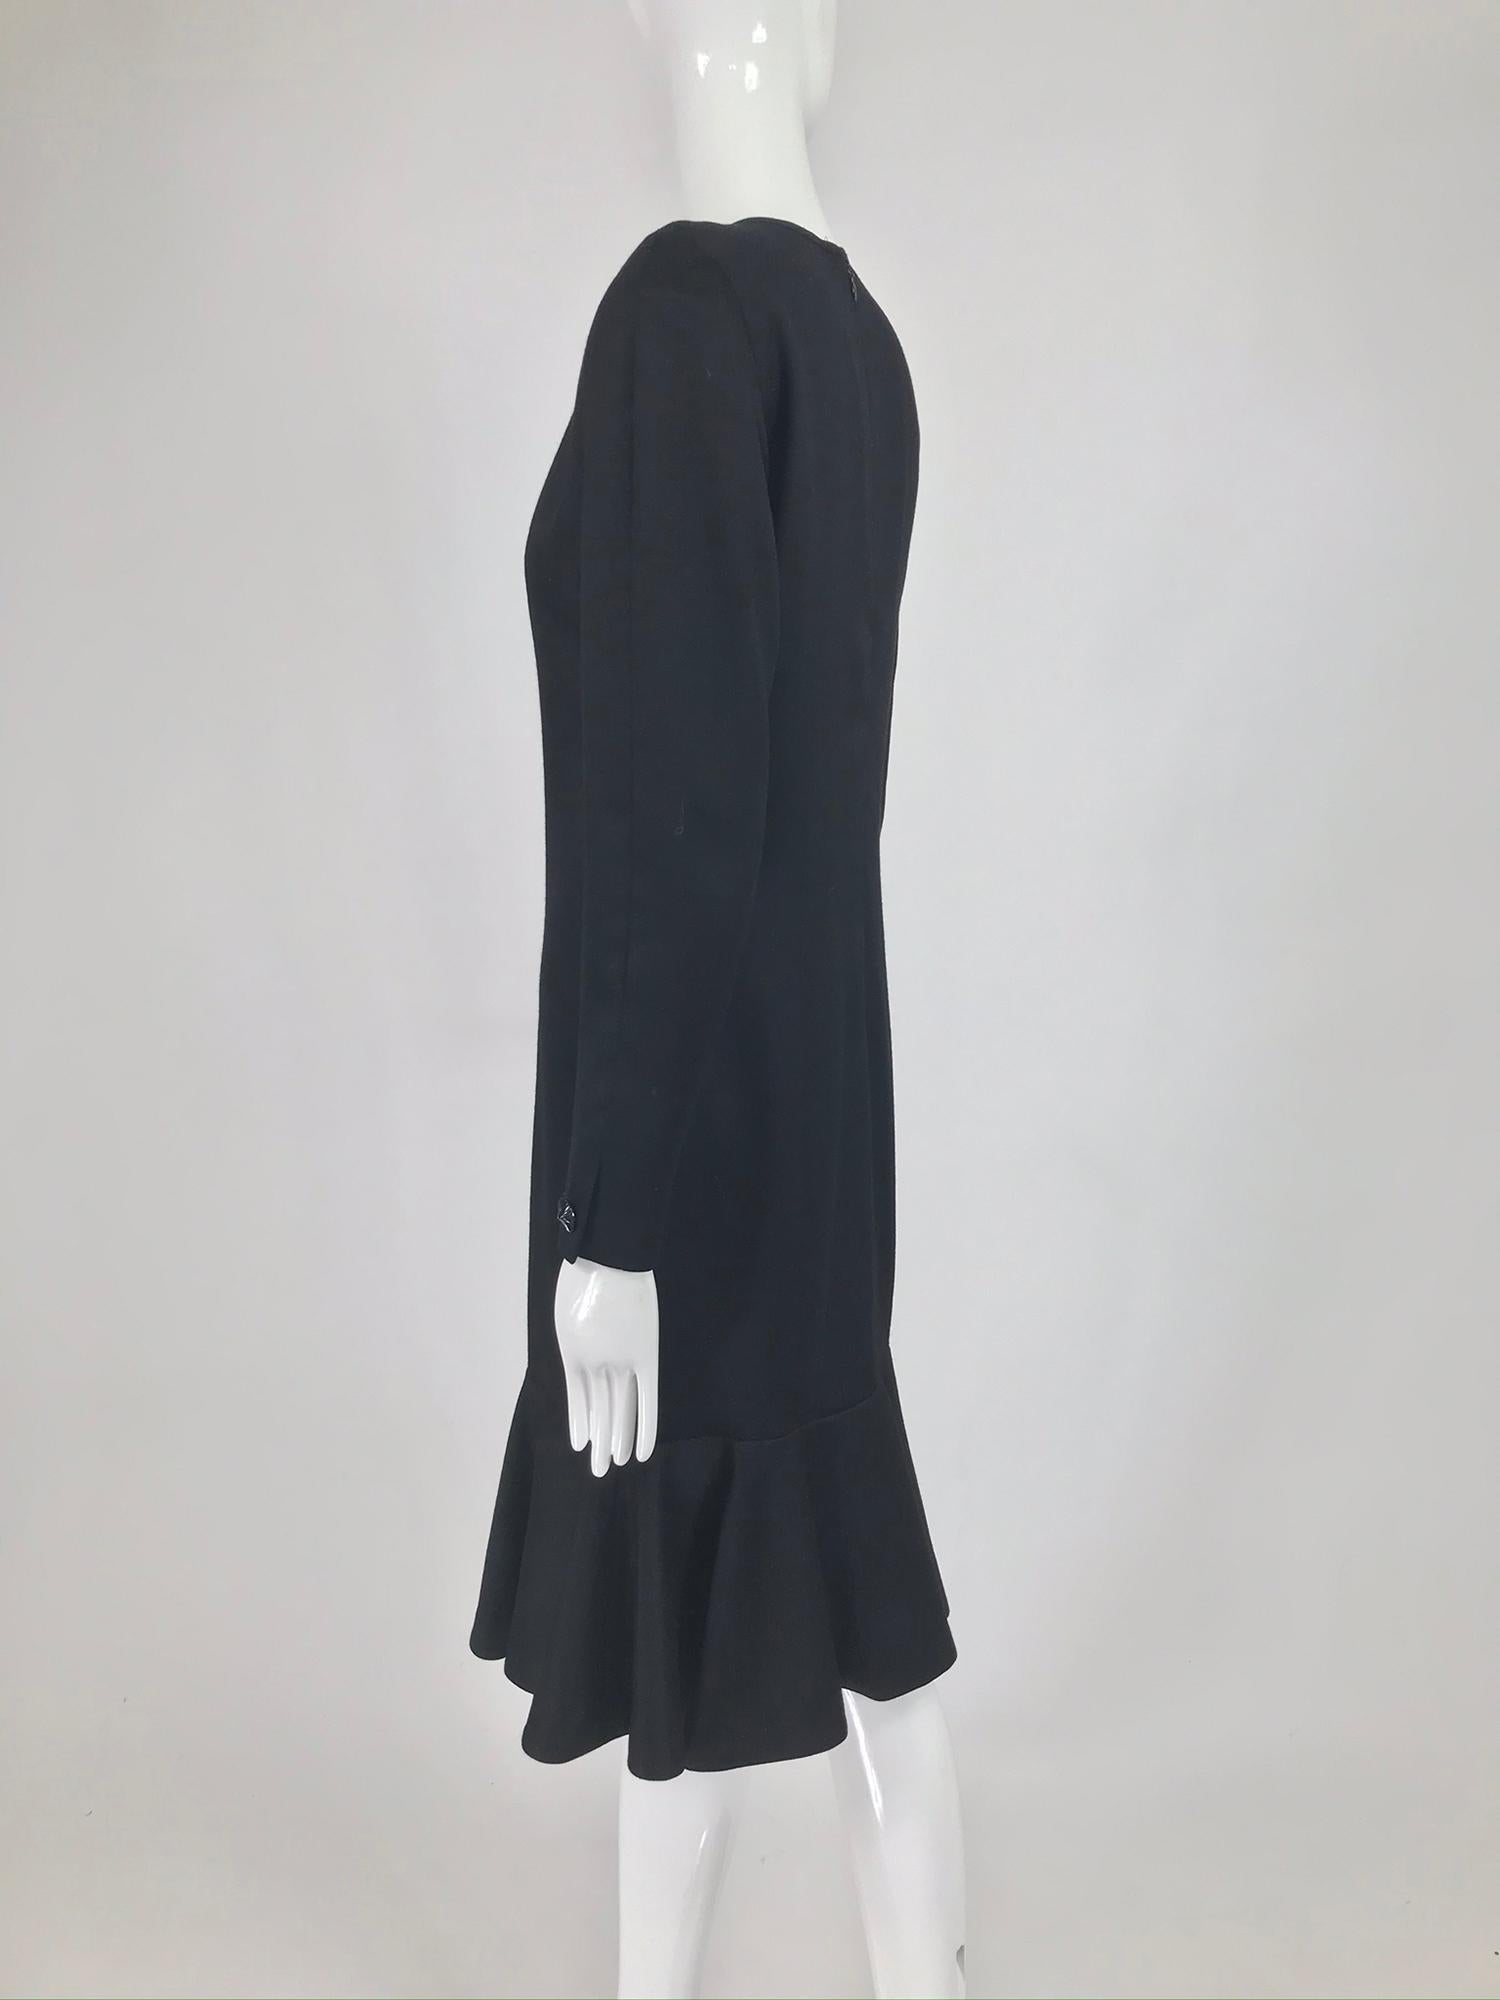 Nina Ricci Black Wool Semi Fitted Dress with Flared Hem 1980s  5